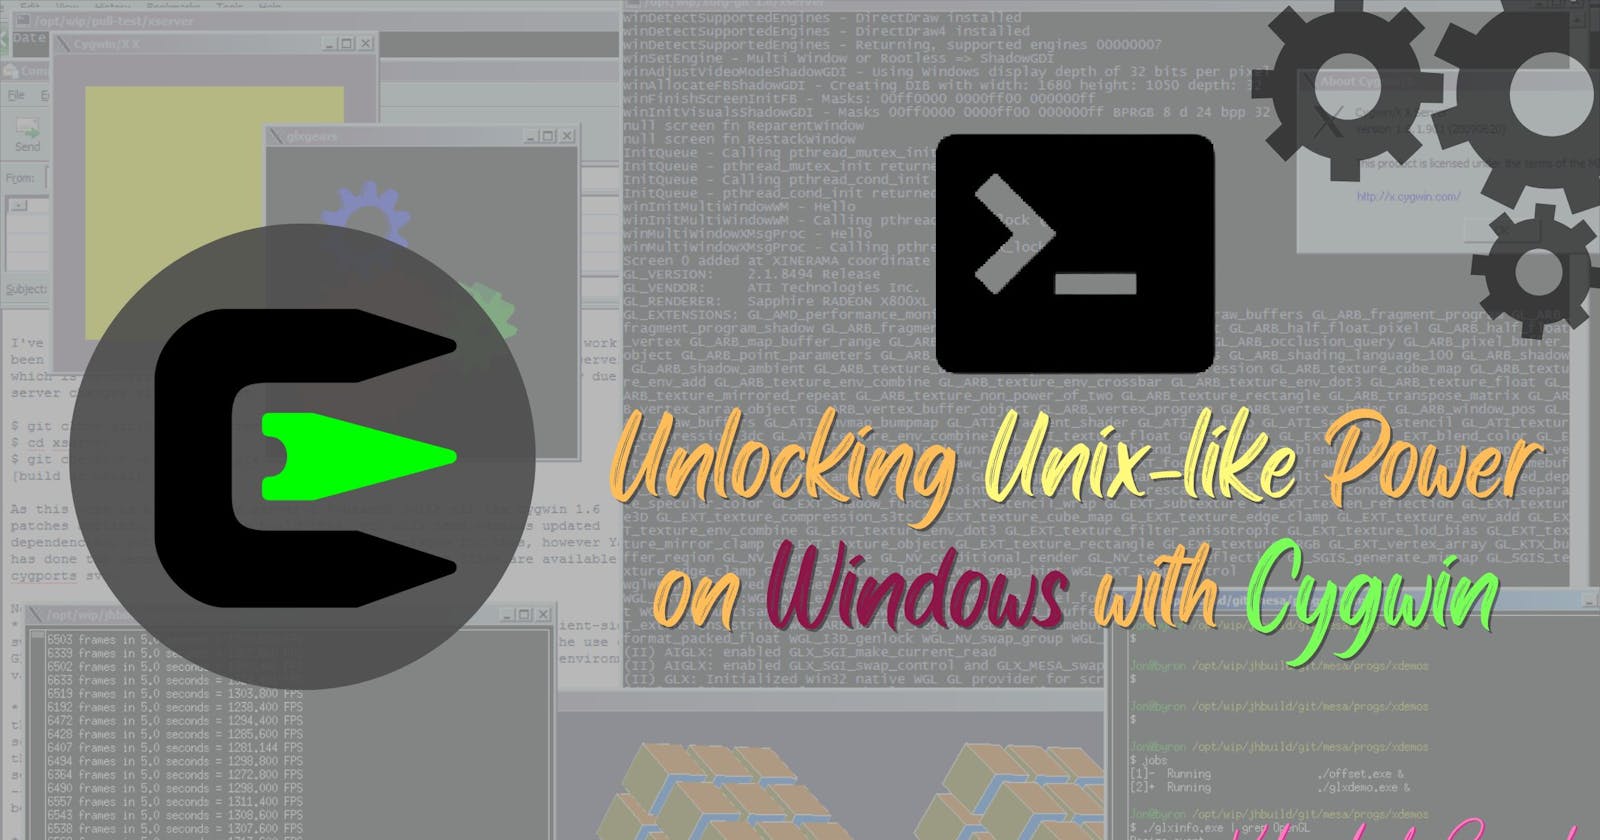 Unlocking Unix-like Power on Windows with Cygwin